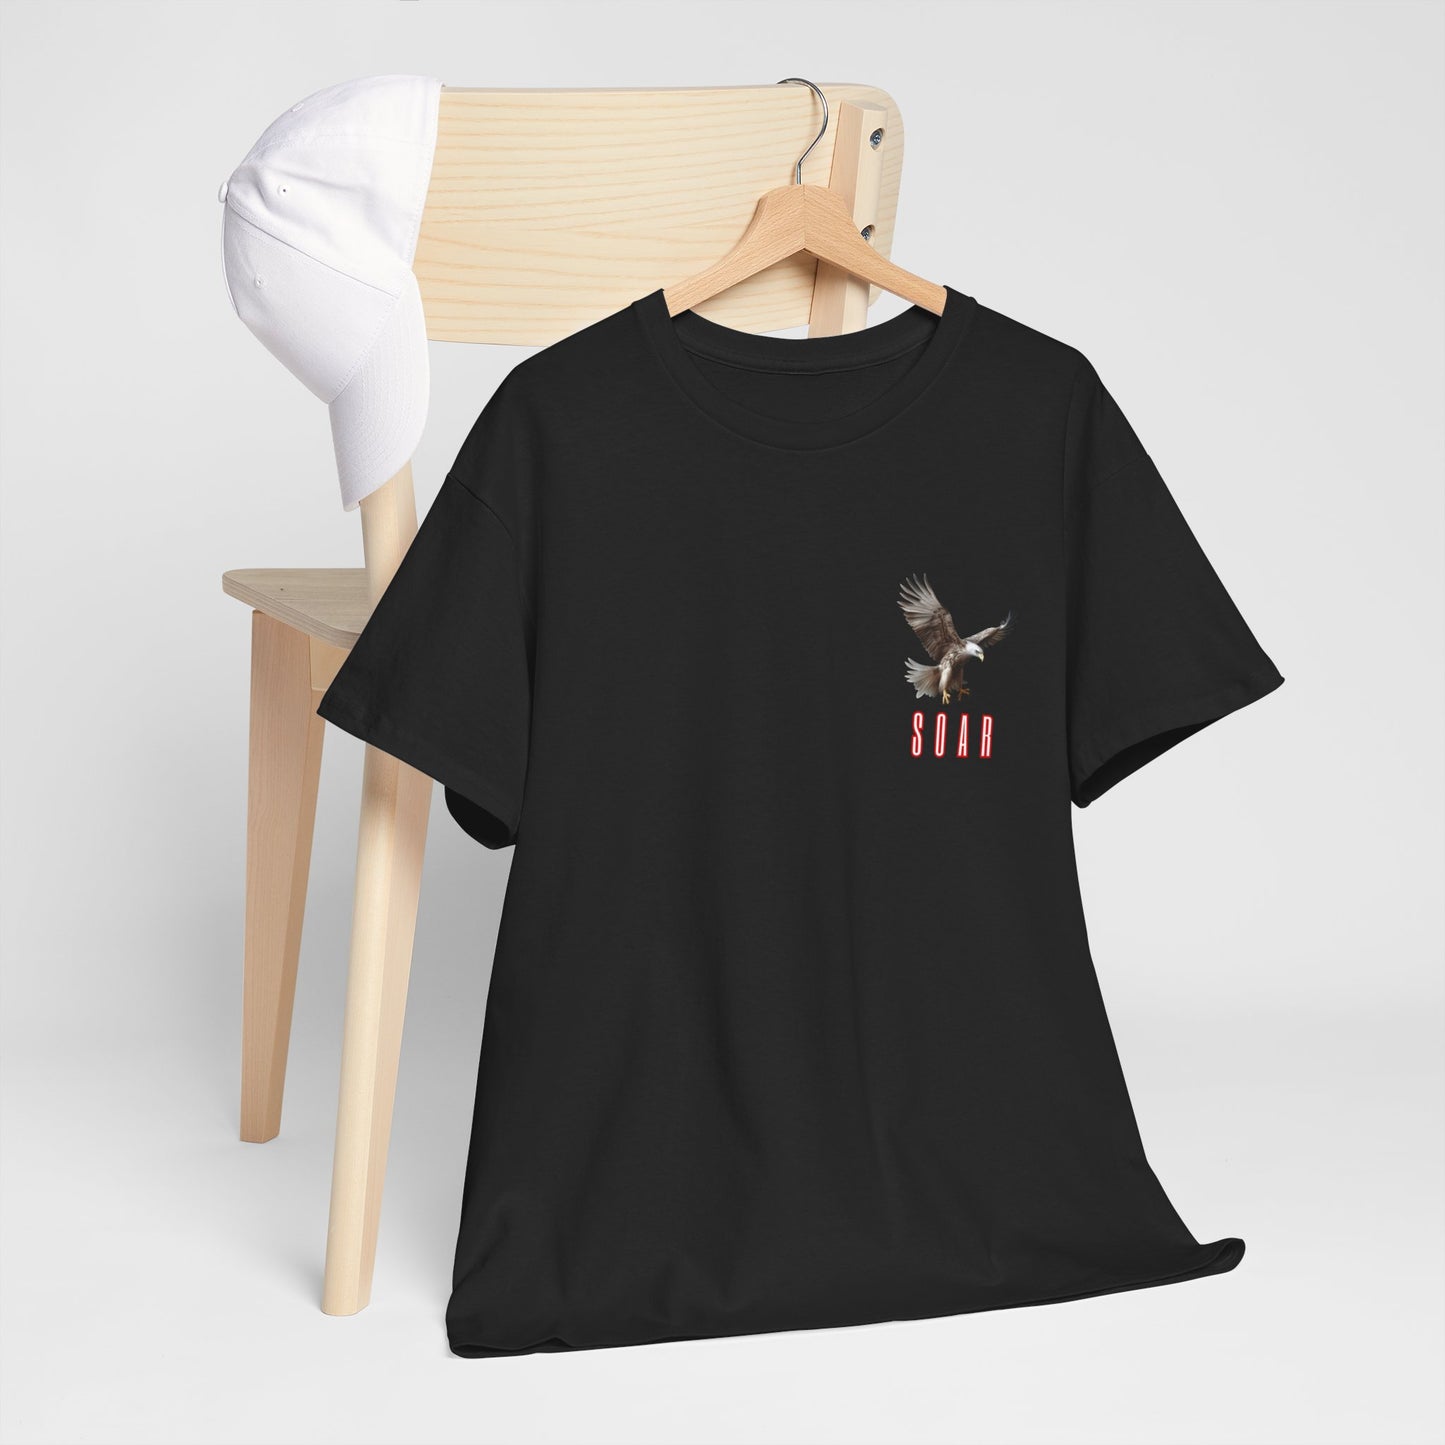 Unisex Heavy Cotton Graphic design ( SOAR) T-shirt